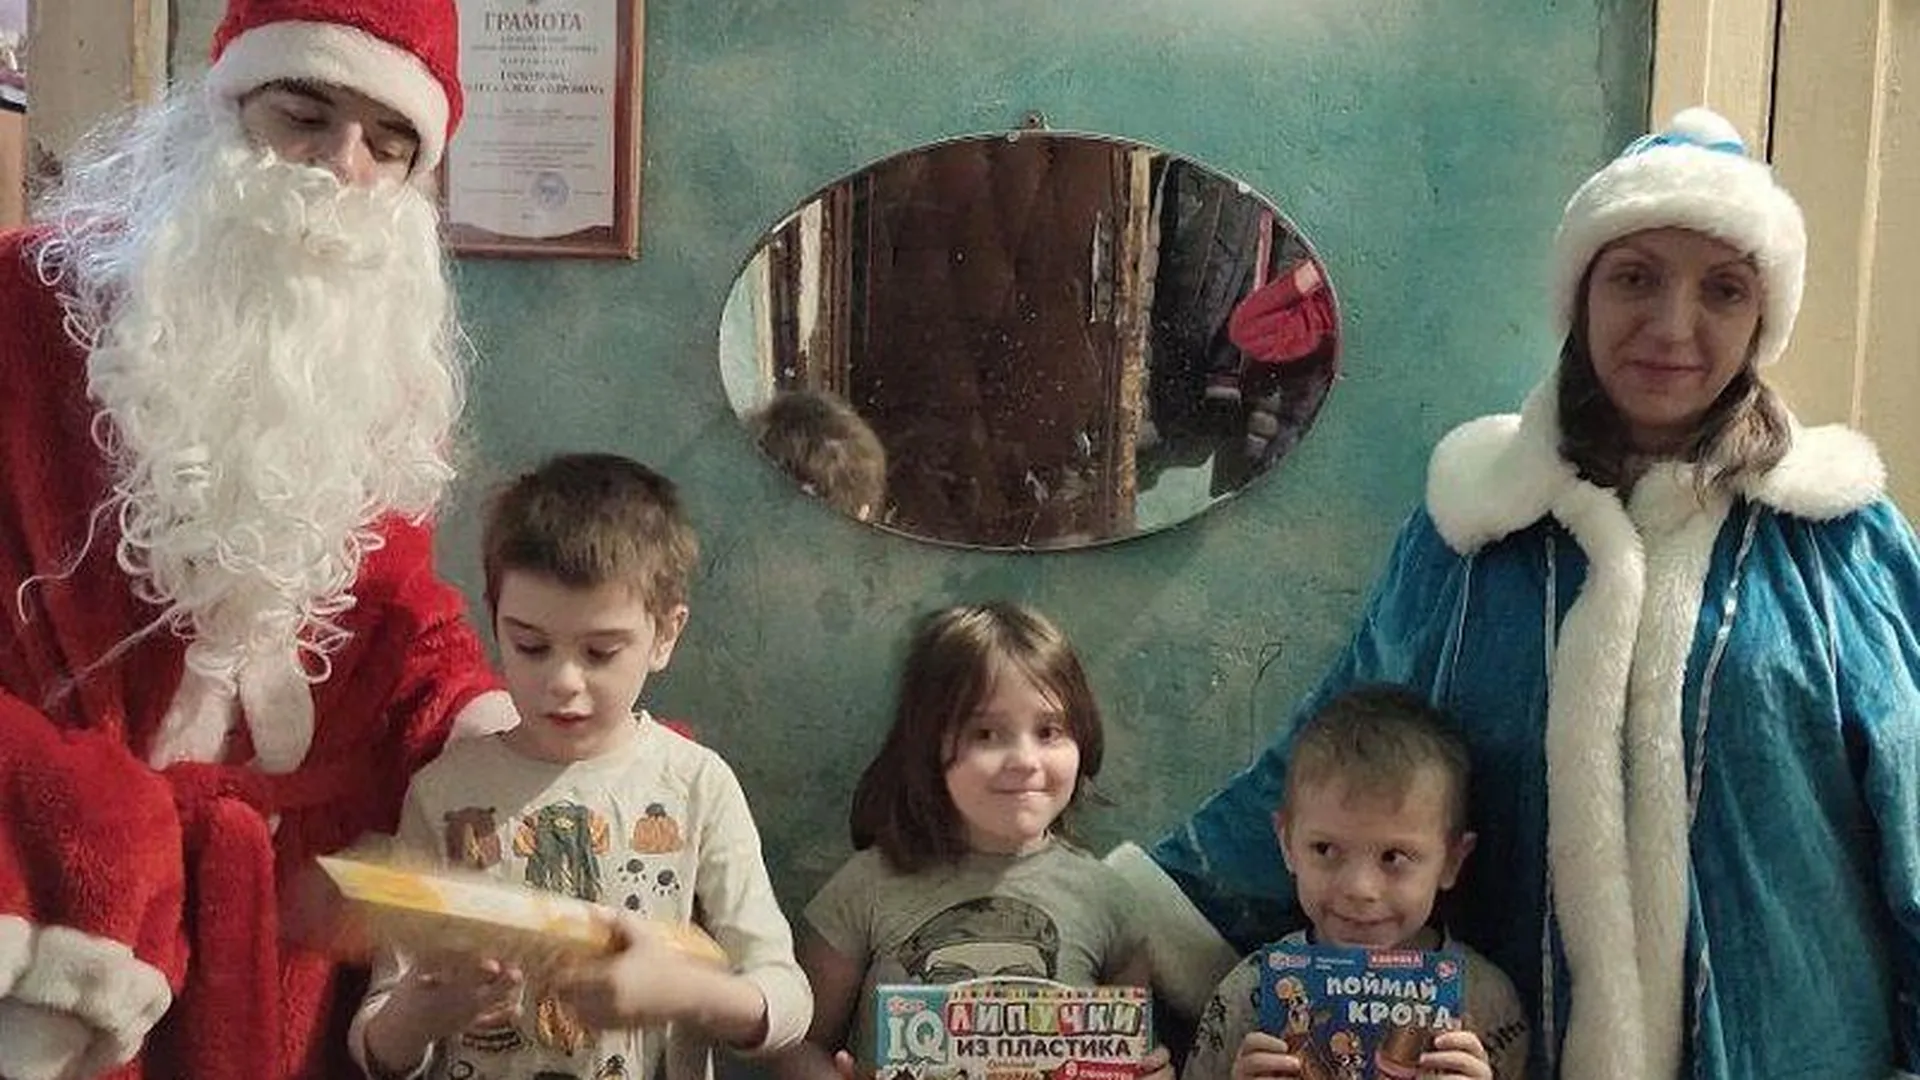 Жительница Донецка бесплатно учится на няню, чтобы уехать от обстрелов 